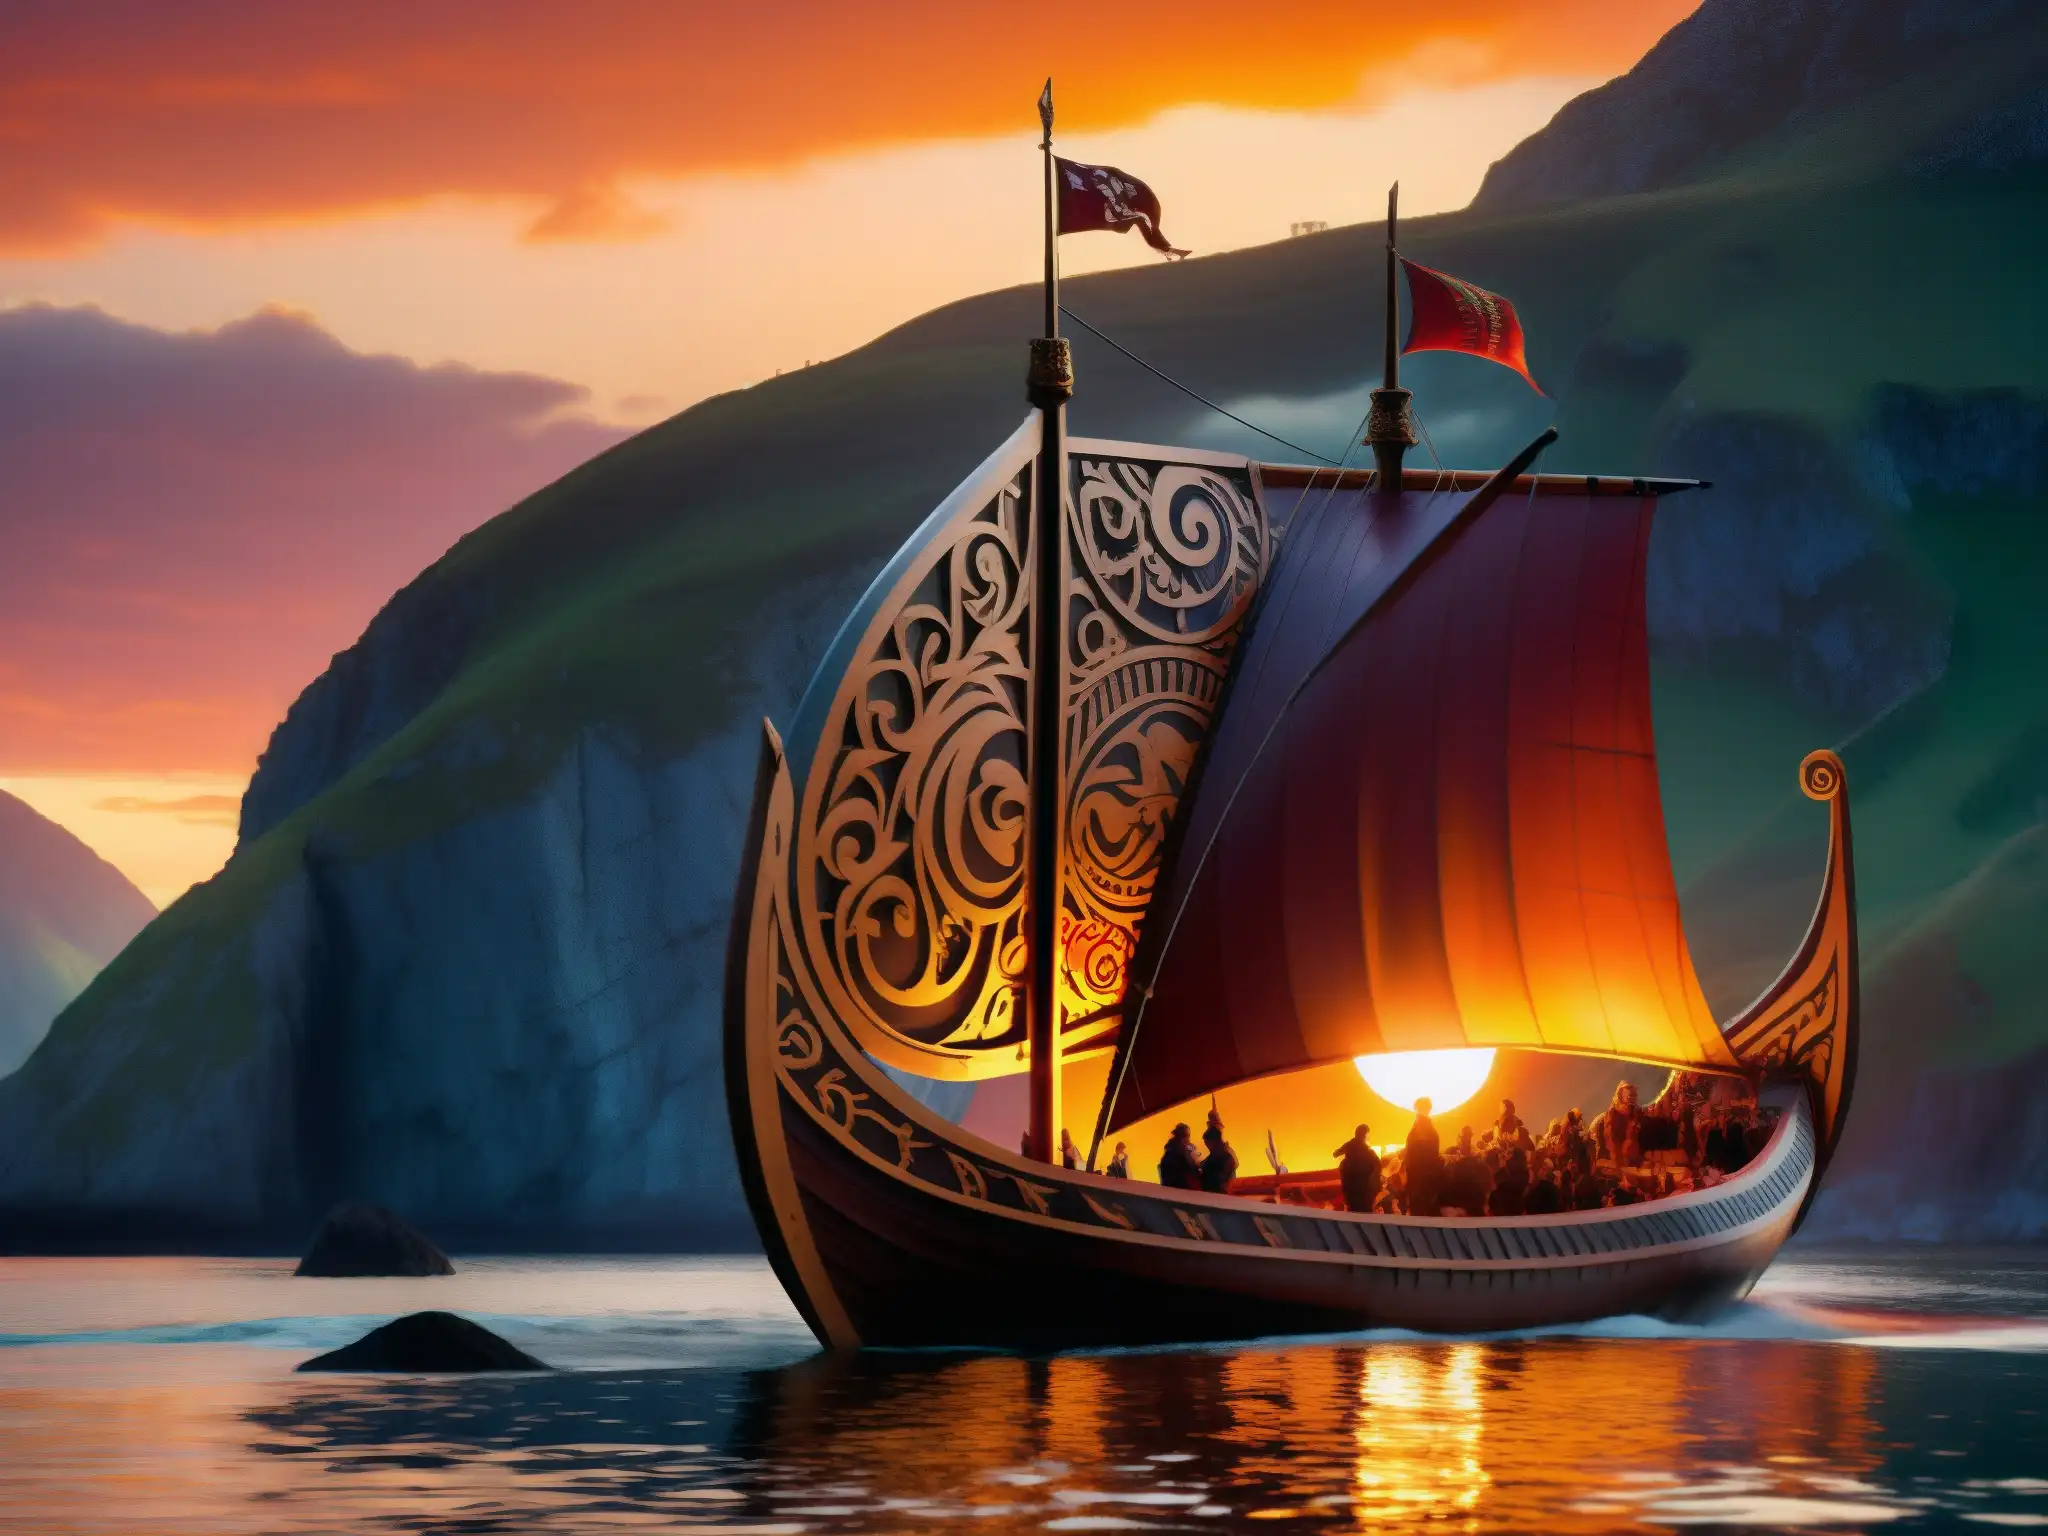 Un majestuoso barco vikingo tallado en la montaña, iluminado por el cálido atardecer